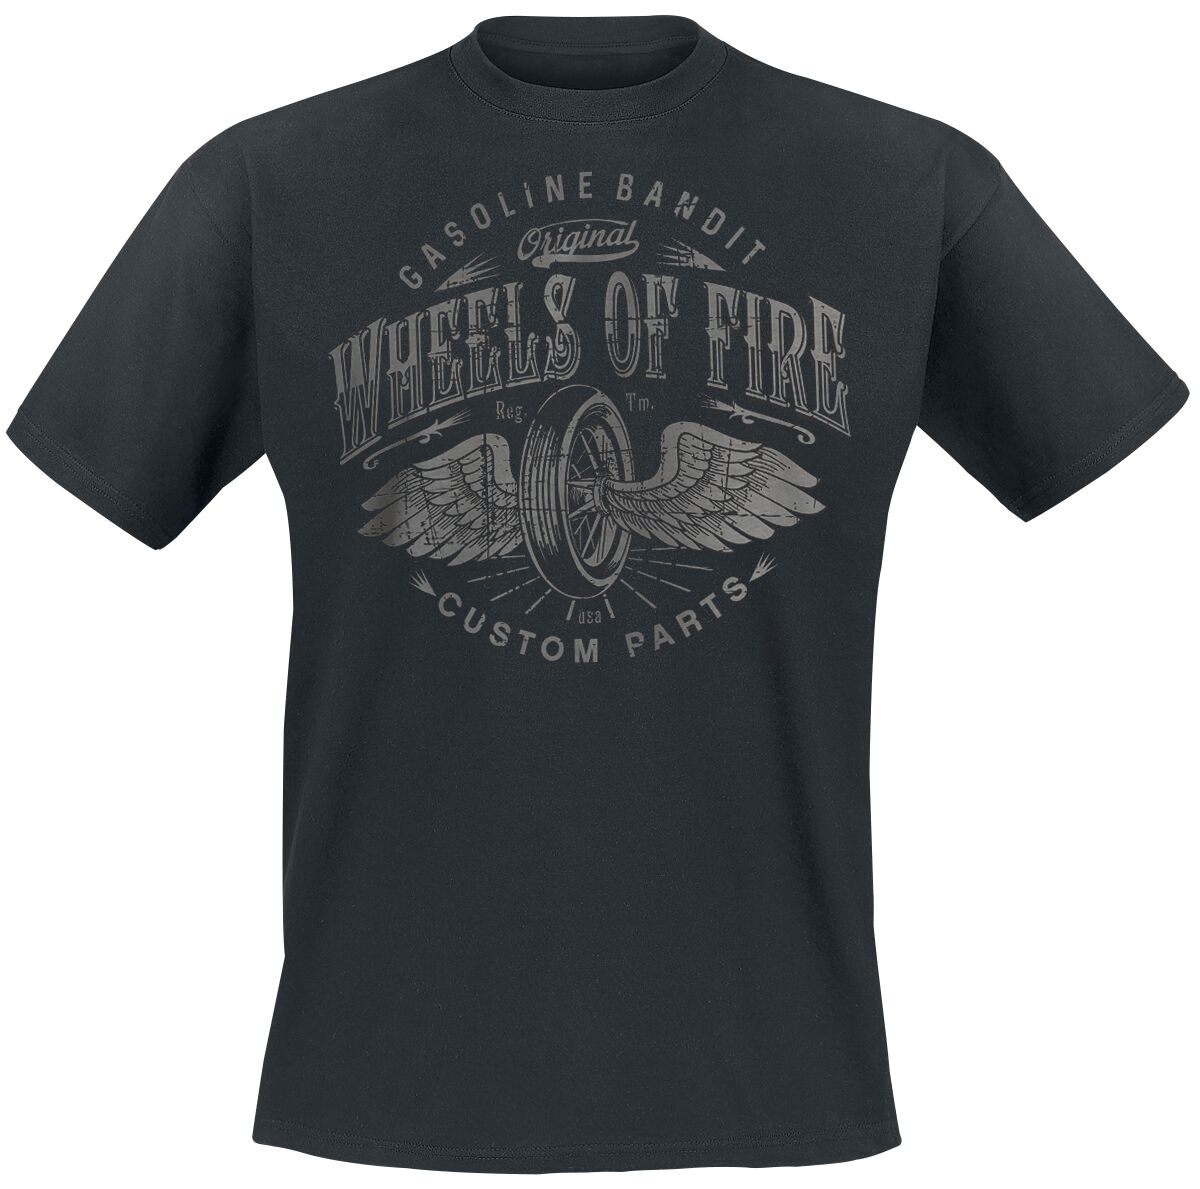 Gasoline Bandit - Rockabilly T-Shirt - Wheels Of Fire - S bis 4XL - für Männer - Größe XXL - schwarz